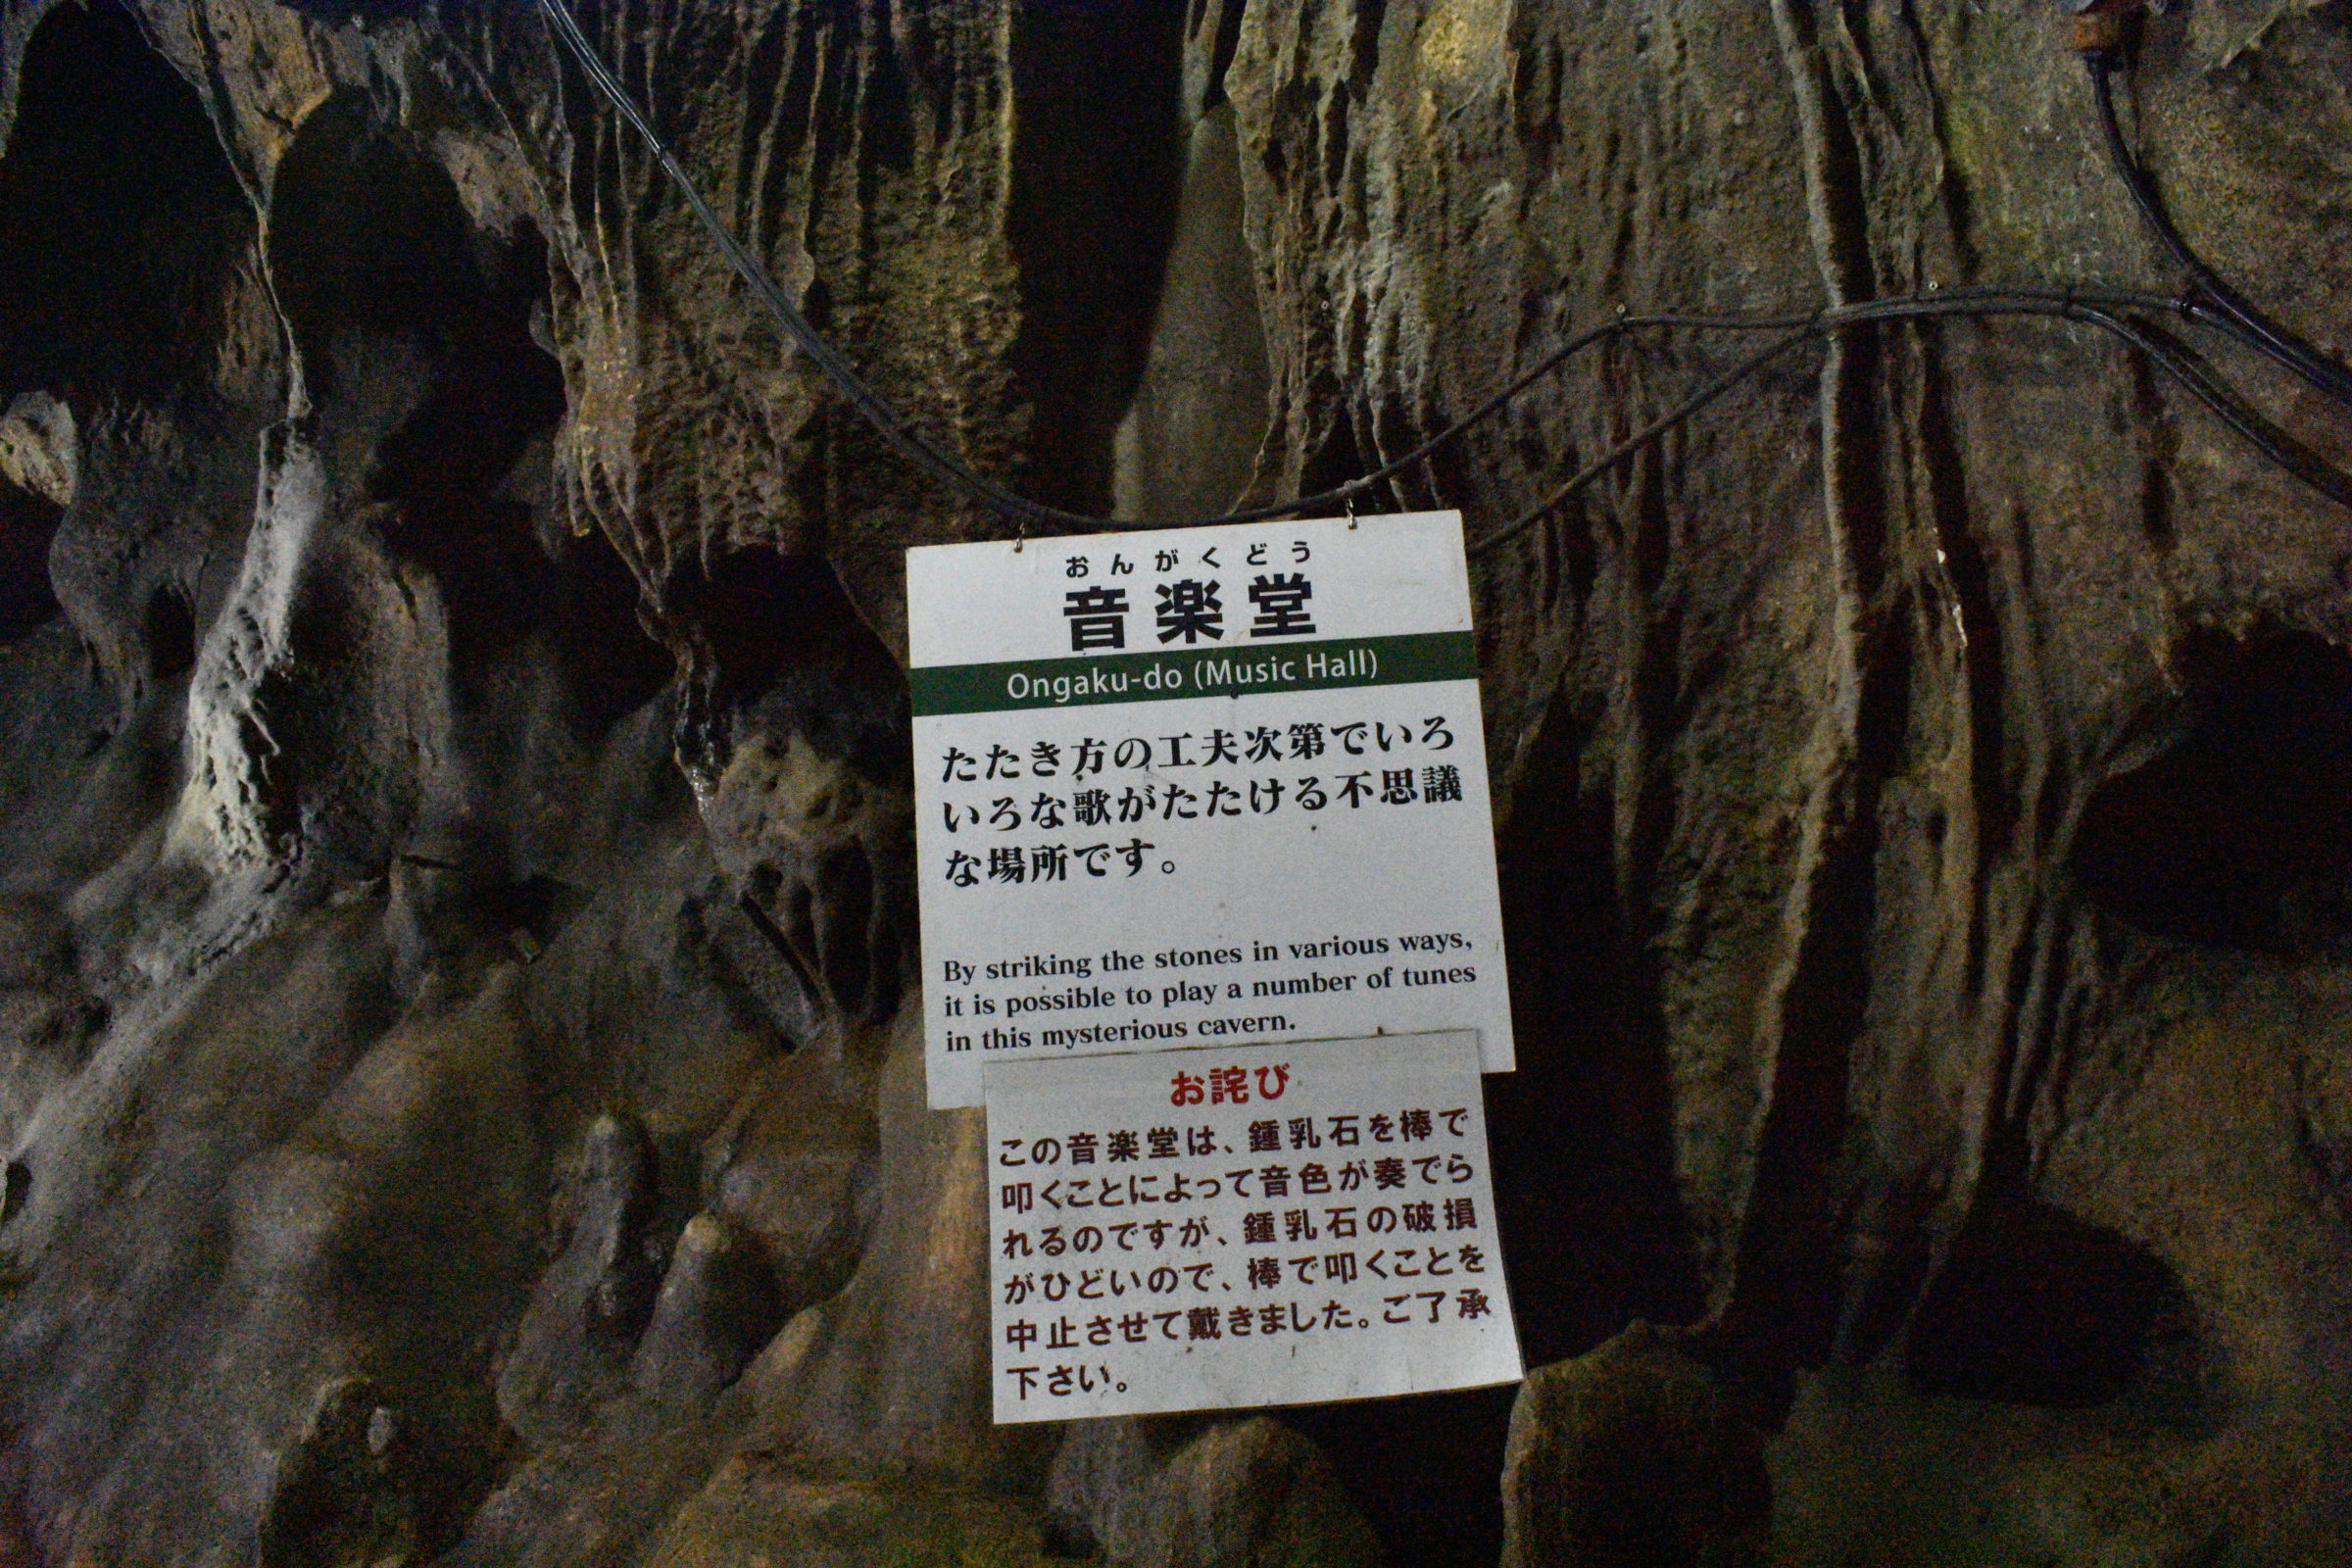 Fujido Limestone Cave